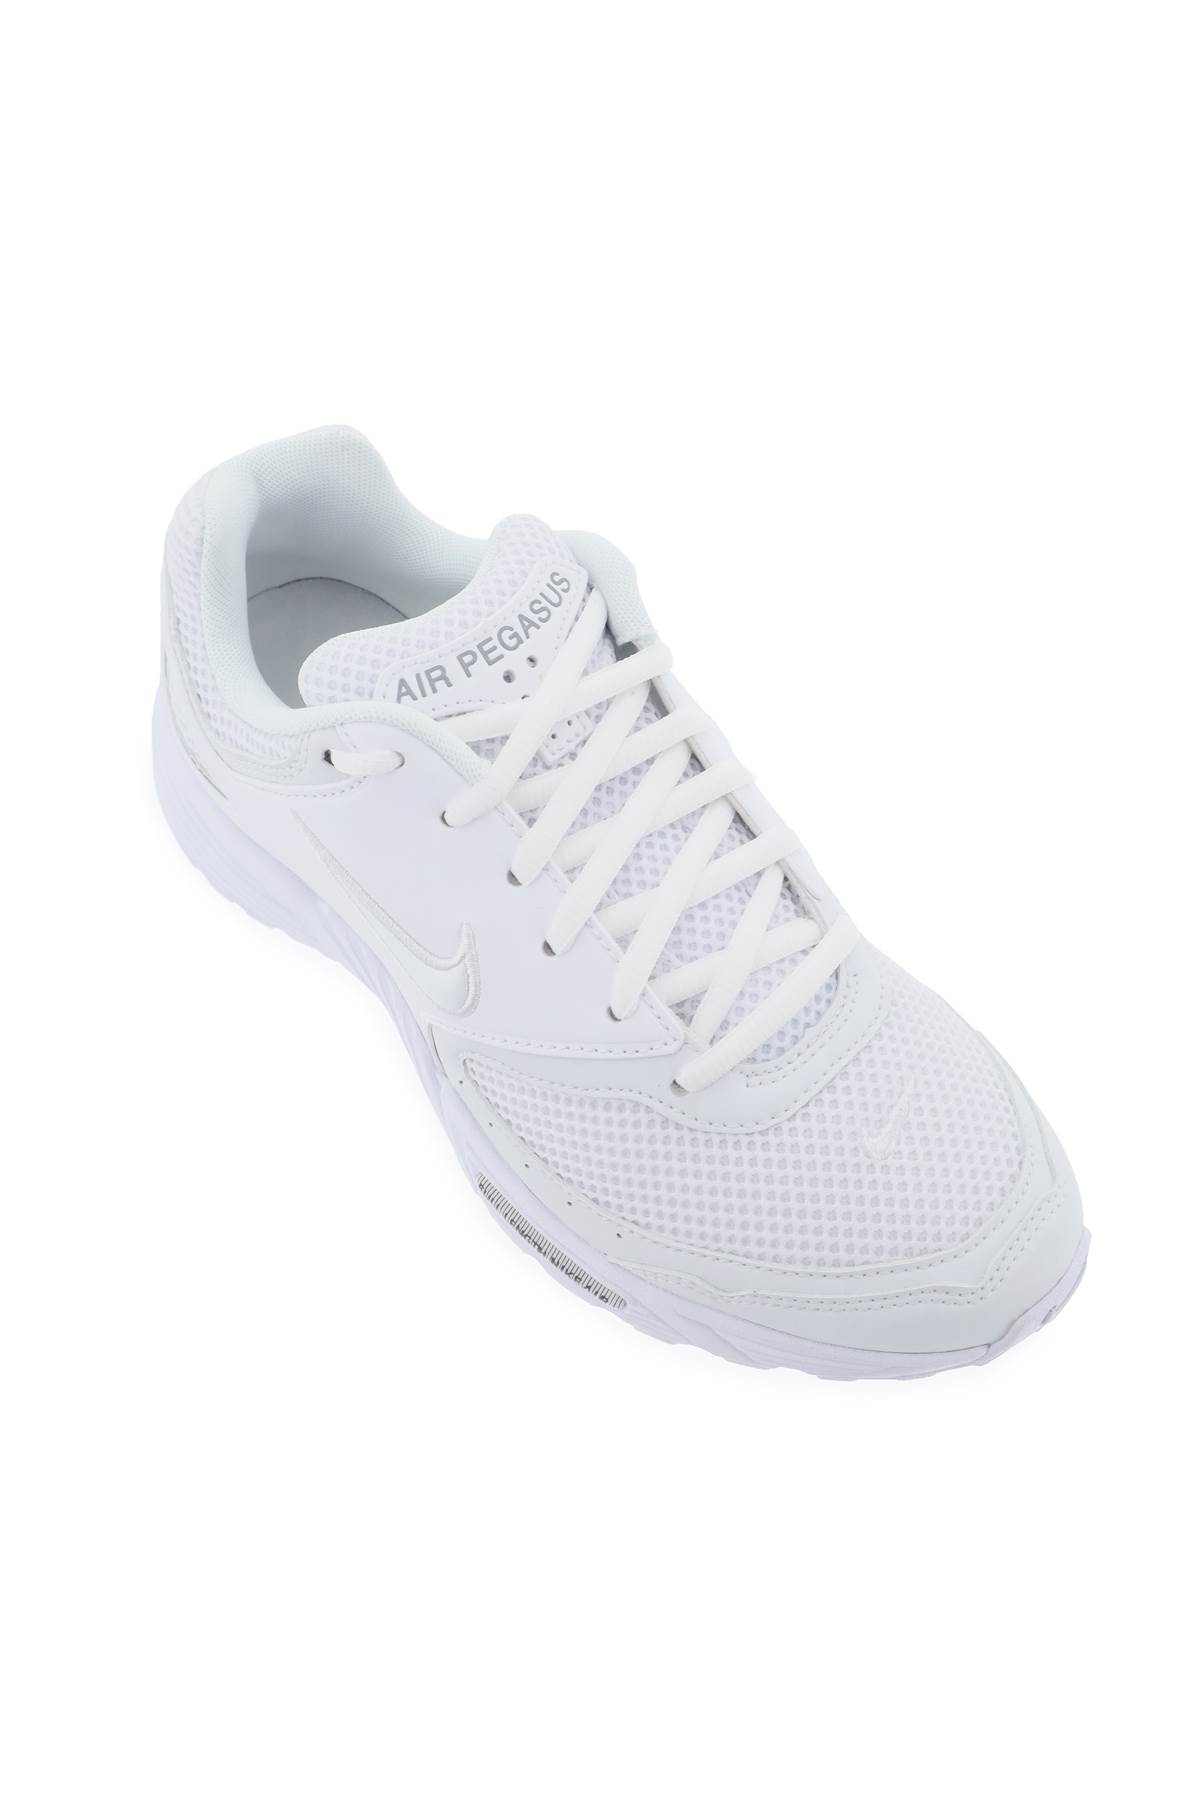 Shop Comme Des Garçons Homme Deux Air Pegasus 2005 Sp Sneakers X Nike In White (white)